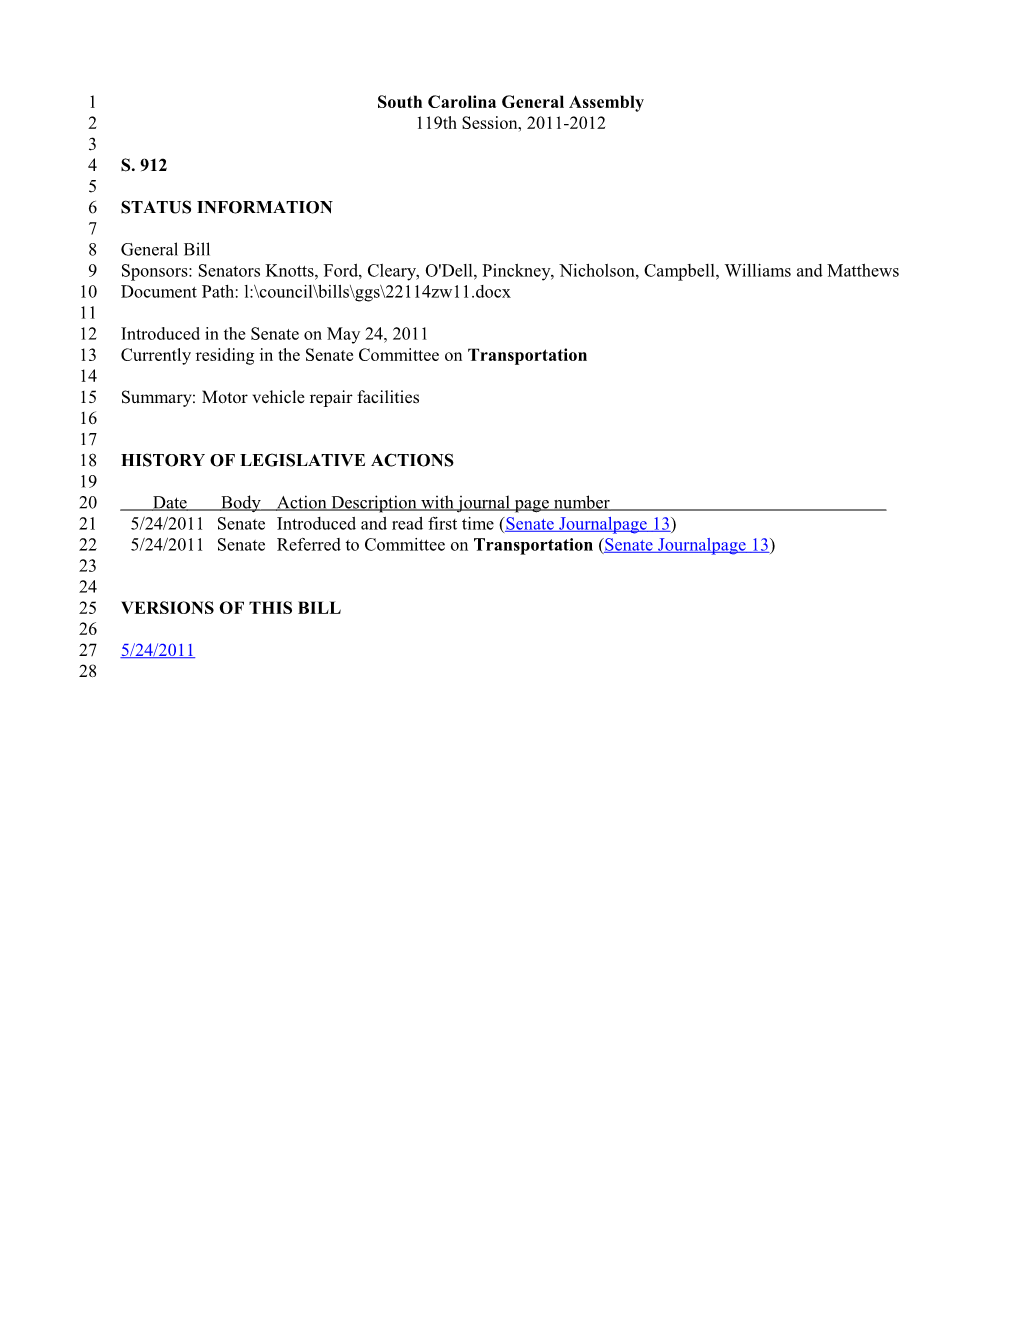 2011-2012 Bill 912: Motor Vehicle Repair Facilities - South Carolina Legislature Online